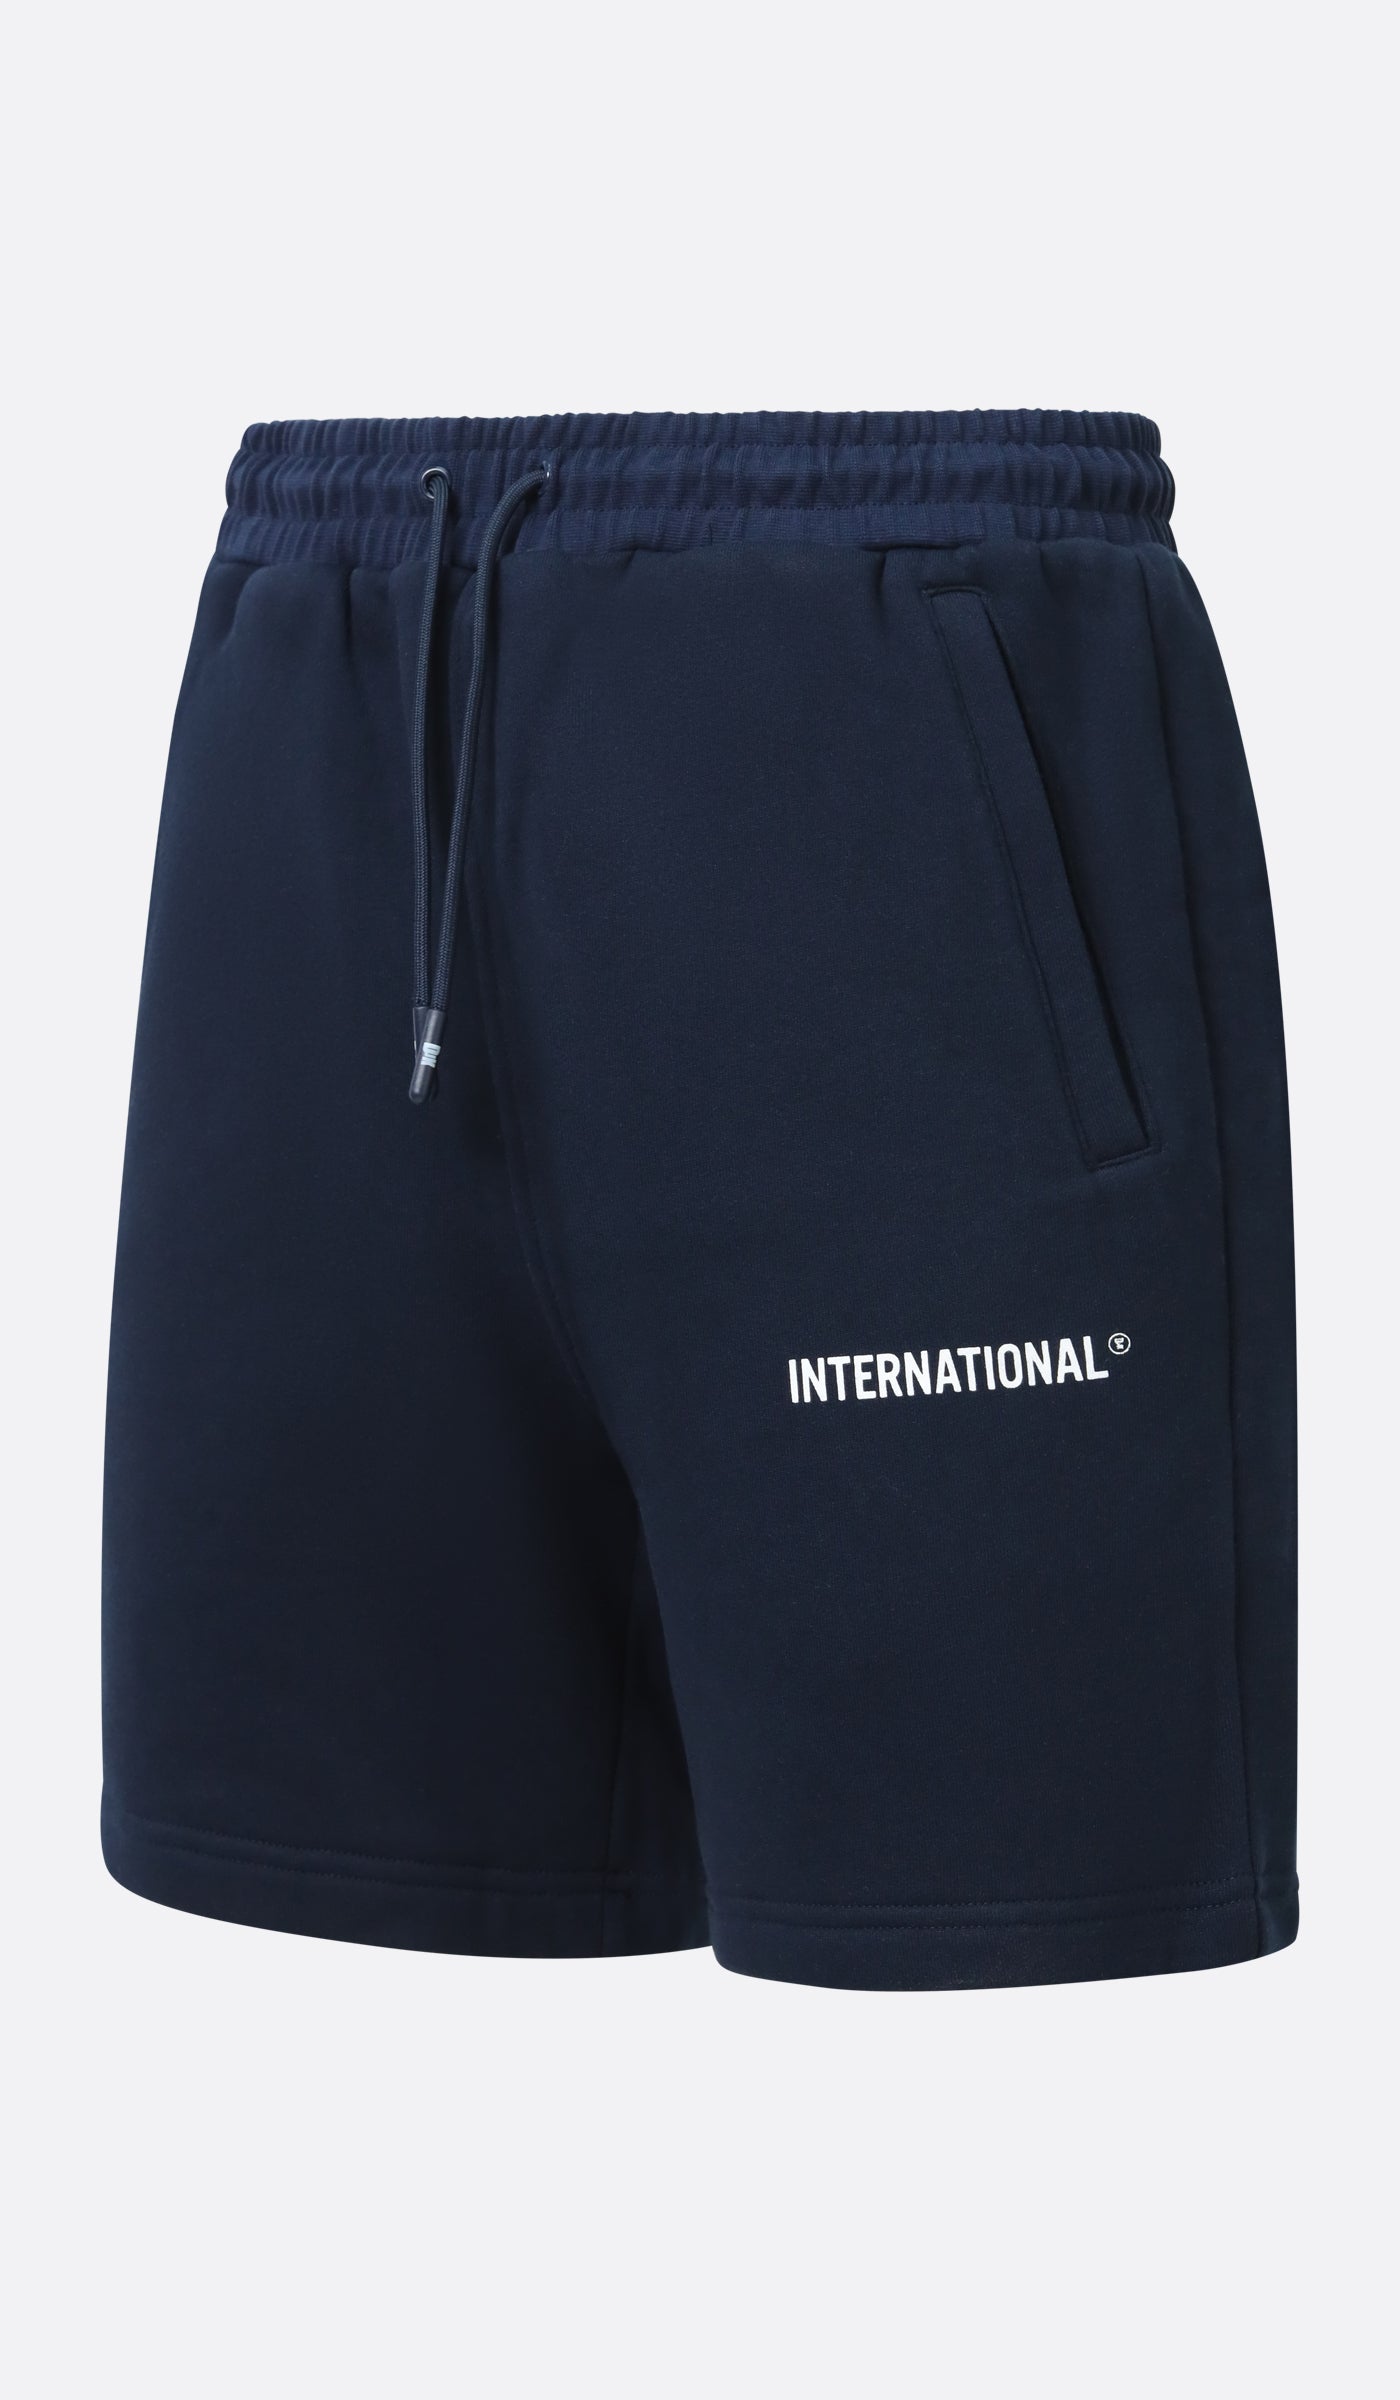 DJK International Cotton Short